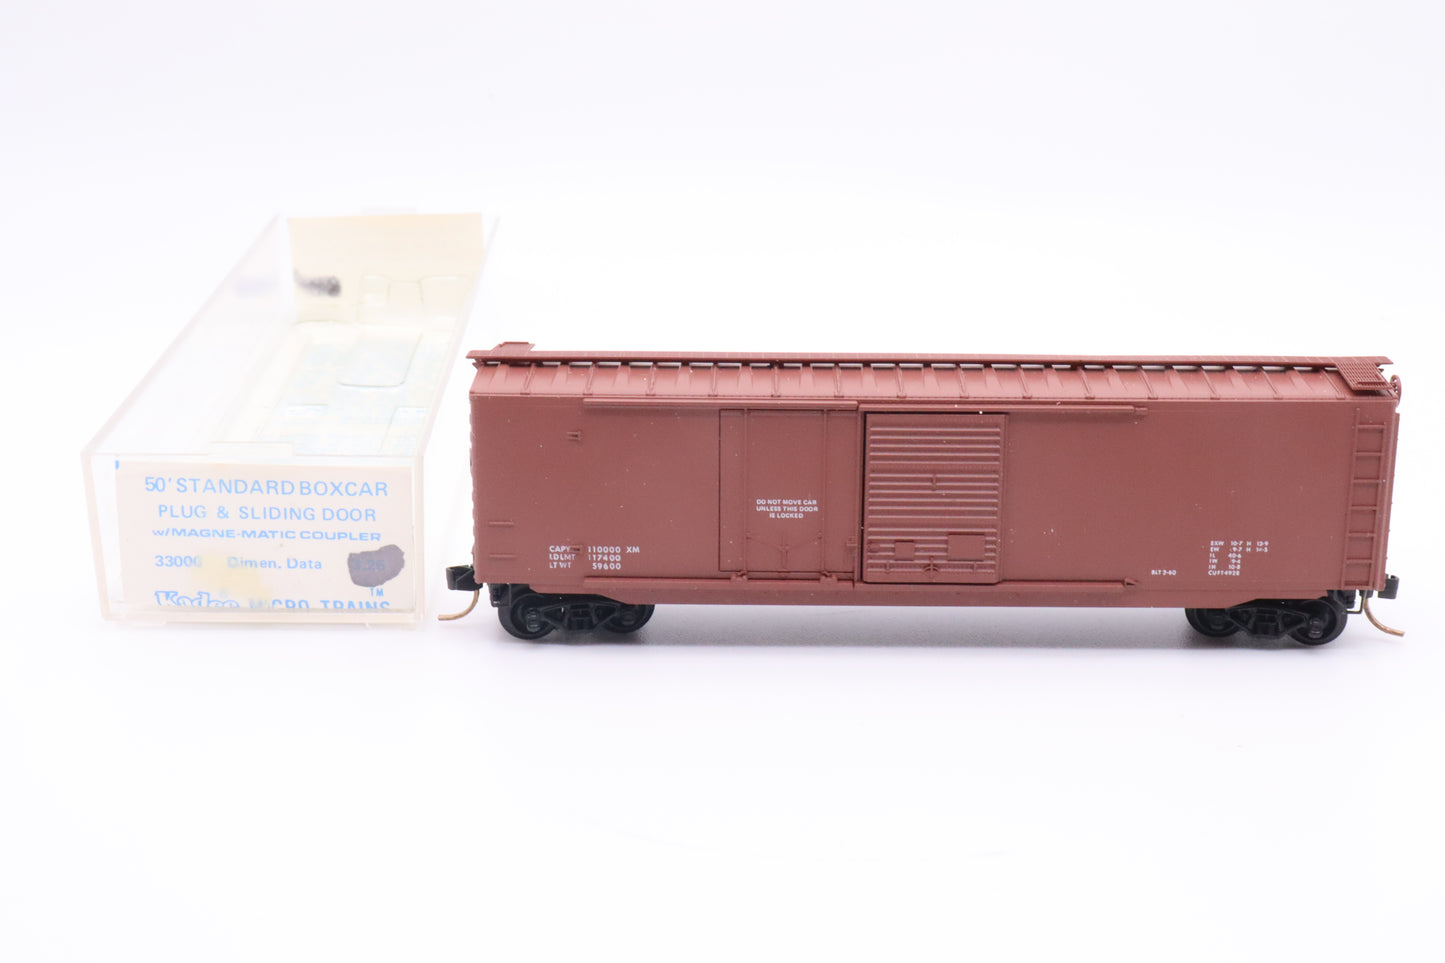 MTL-33000 - Kadee - 50' Standard Boxcar, w/ Plug & Sliding Door - Dim Data